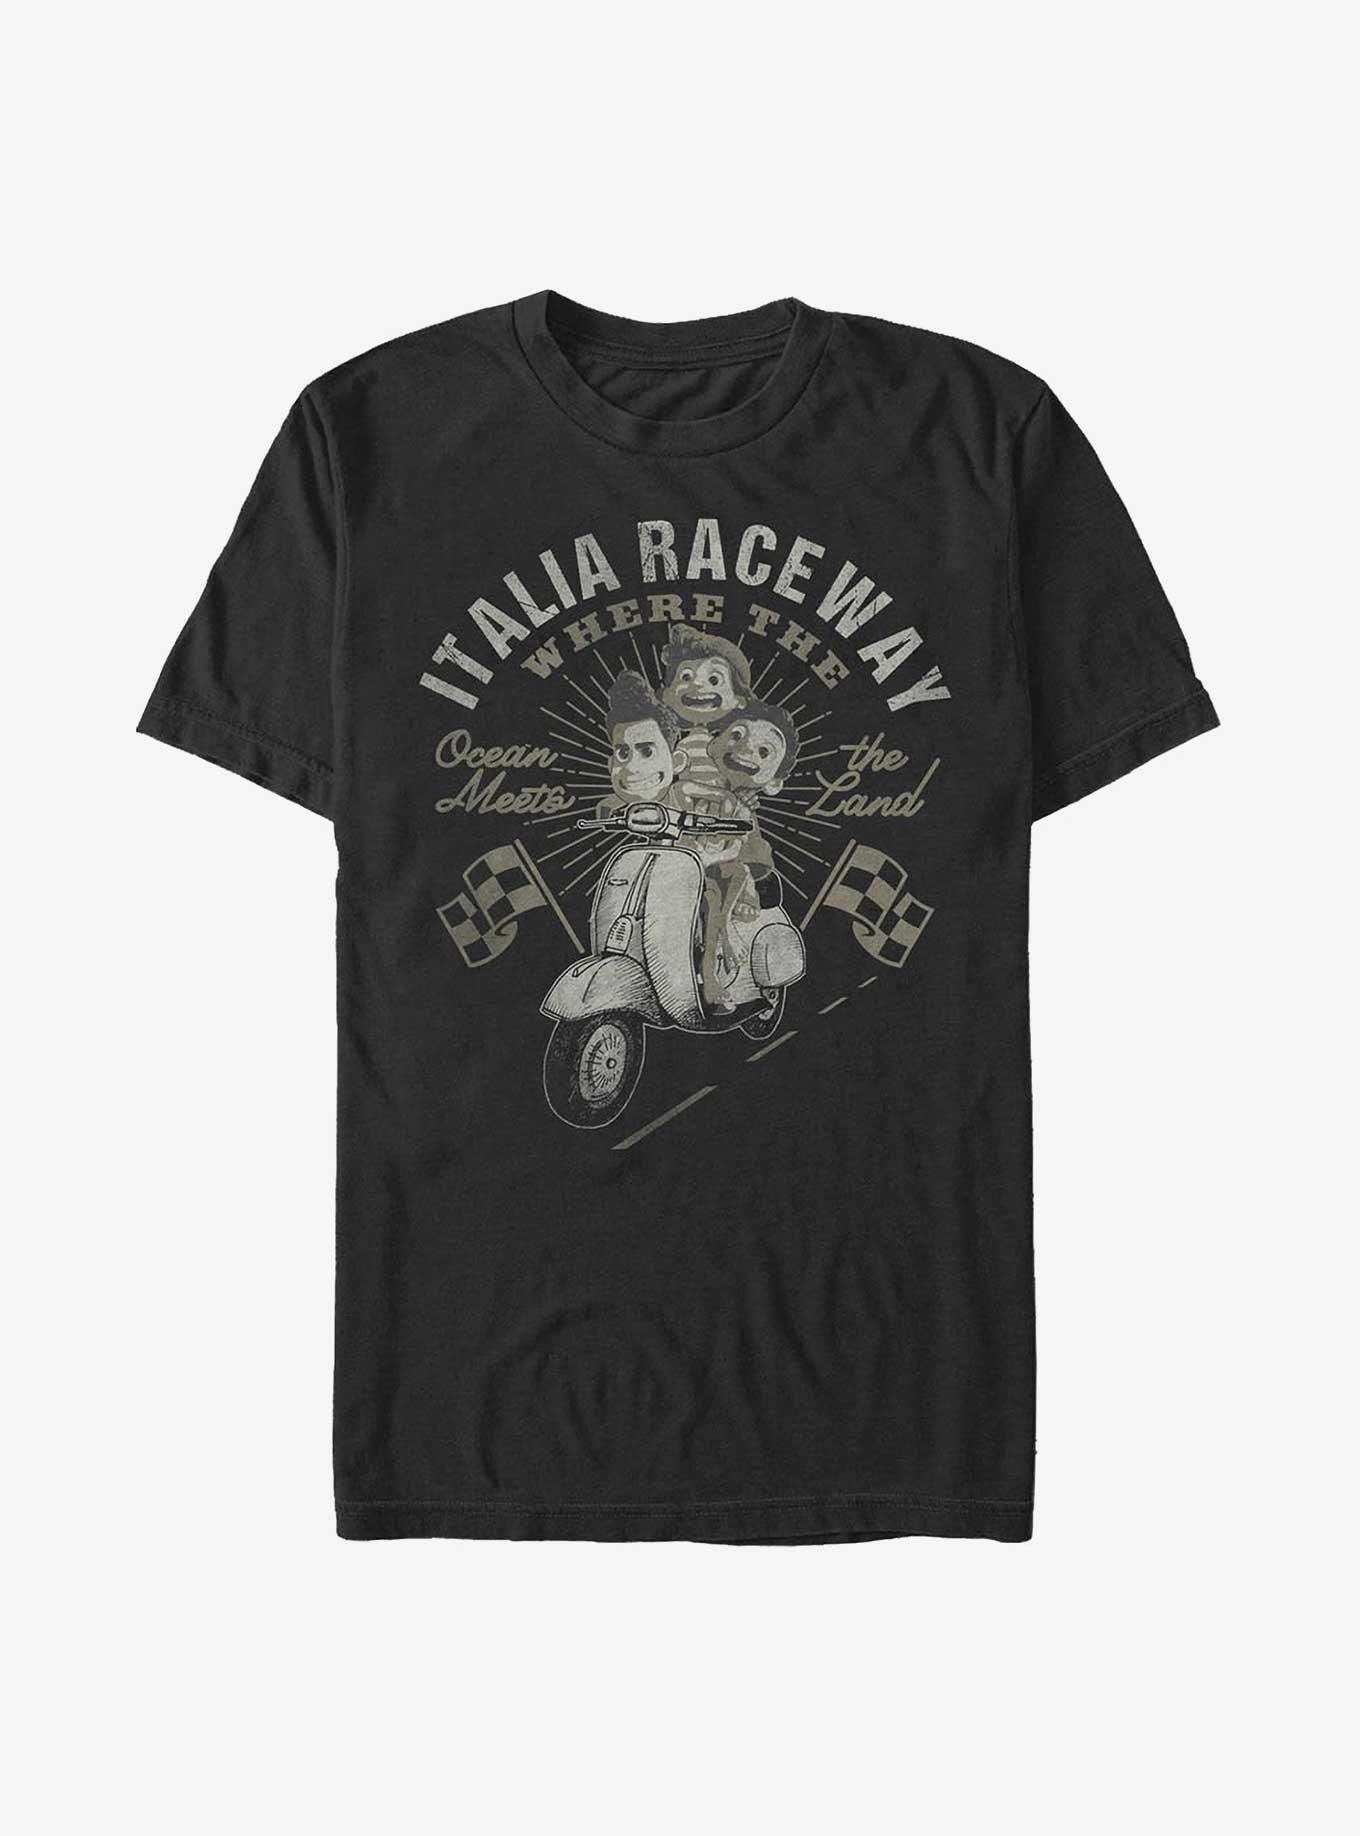 Disney Pixar Luca Italia Raceway T-Shirt, BLACK, hi-res